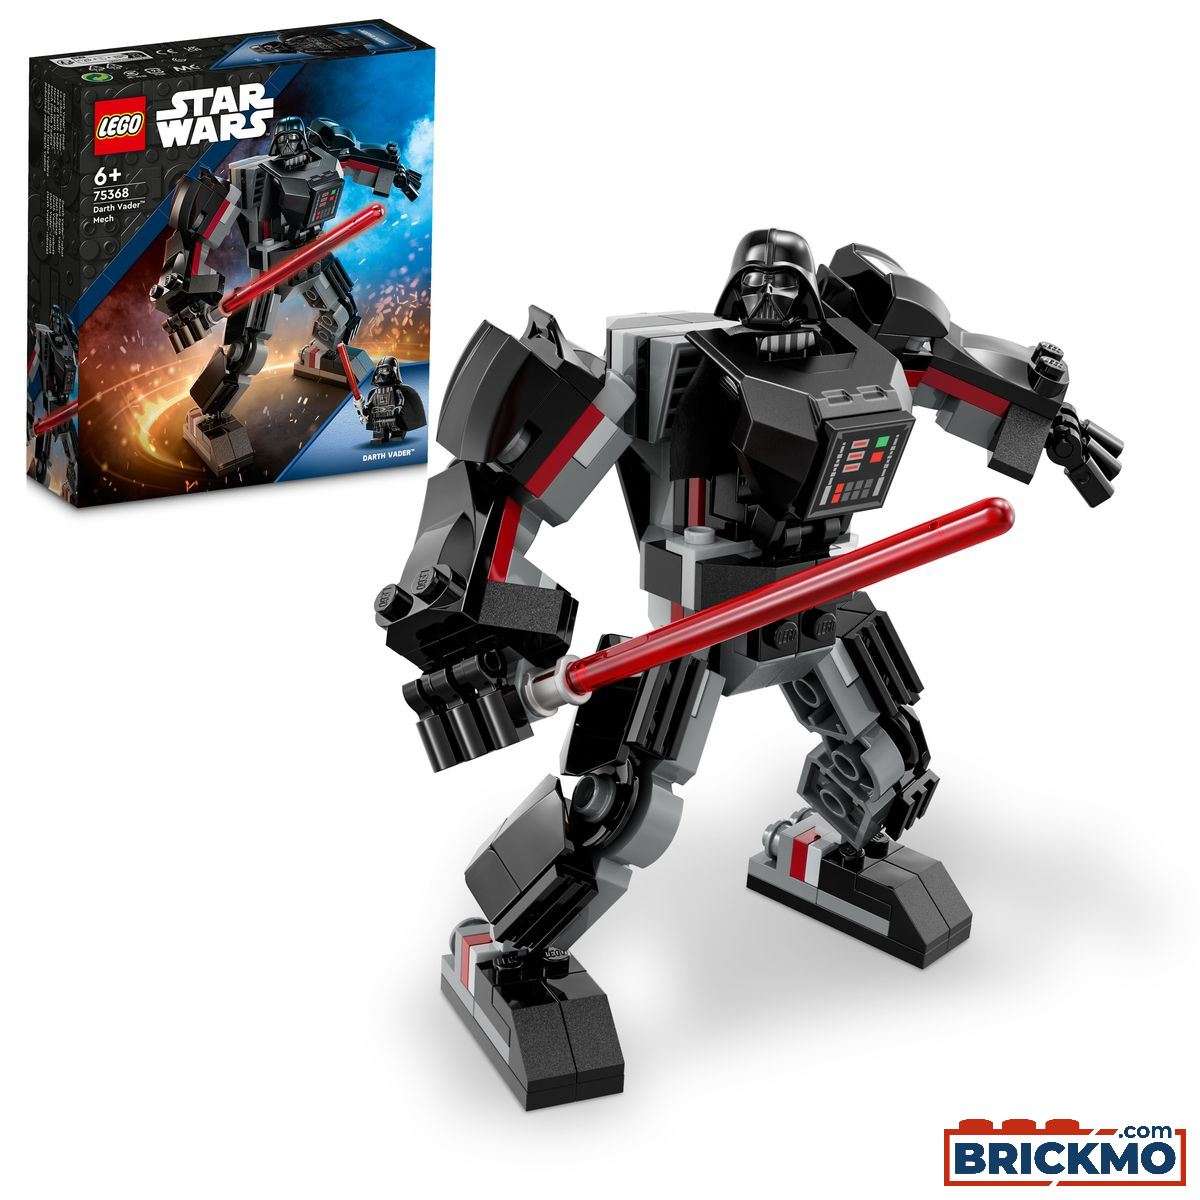 LEGO Star Wars 75368 Darth Vader robot 75368